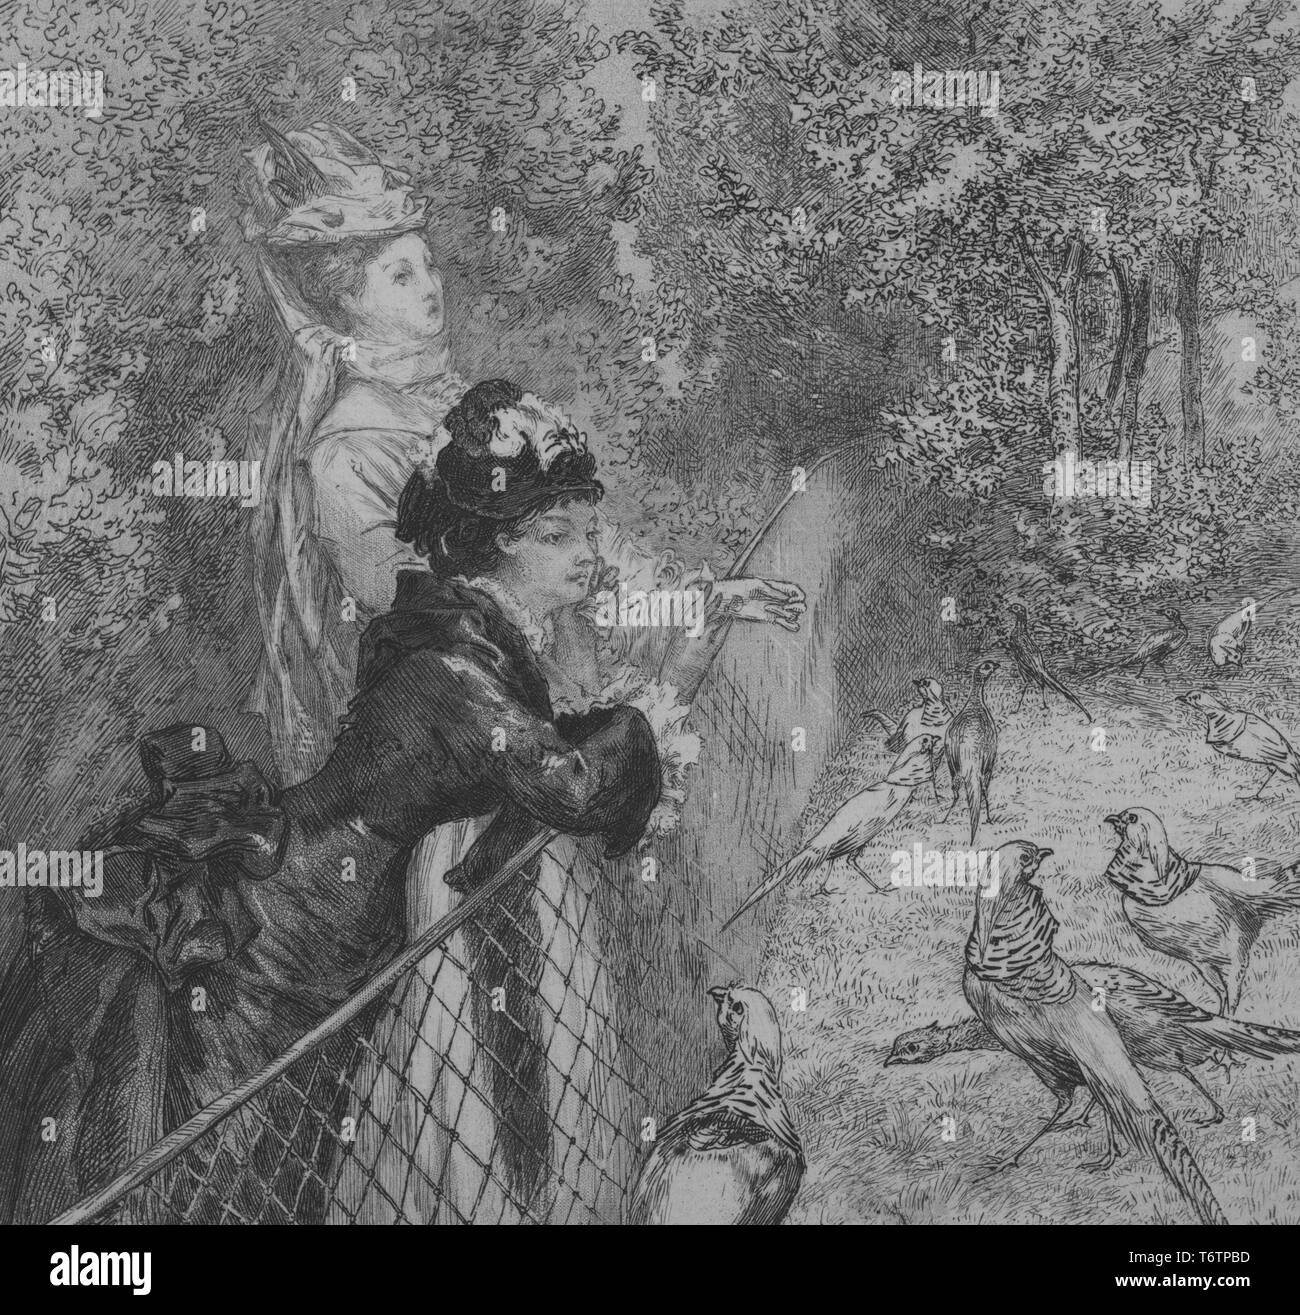 Gravure noir et blanc représentant deux femmes, portant des robes victoriennes et de chapeaux, debout dans un parc et s'appuyant sur un grillage, avec les faisans sur le côté opposé de la clôture ; situé dans le jardin d'Acclimatation, un parc d'amusement dans le Bois de Boulogne, un grand parc public à Paris, France ; titre 'Au jardin d'acclimatation (deuxième planche)' (dans le jardin d'Acclimatation - deuxième chambre) ; signé par l'illustrateur Félix Bracquemond, 1867. À partir de la Bibliothèque publique de New York. () Banque D'Images